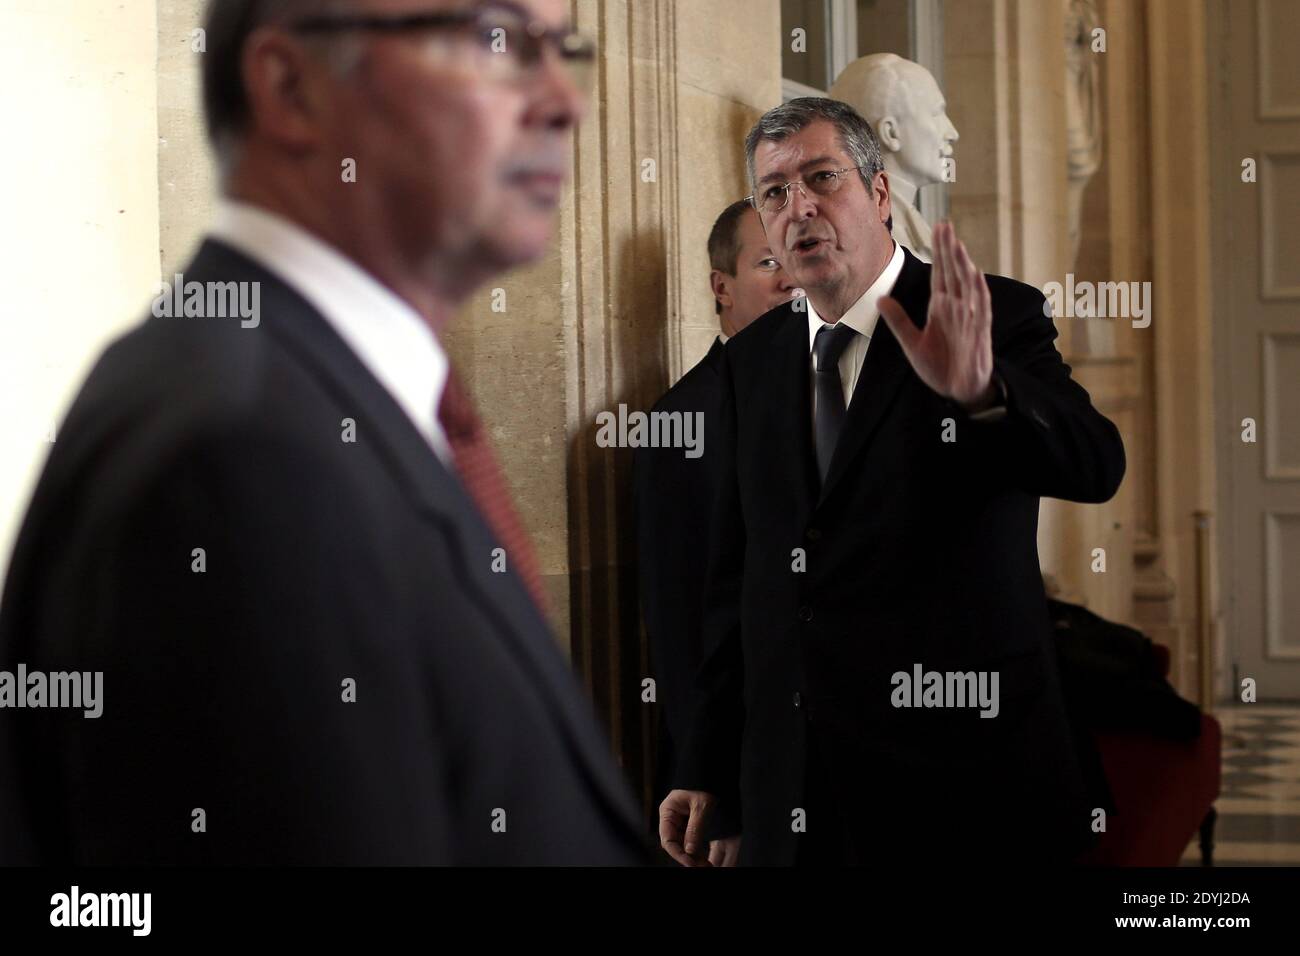 Patrick Balkany, député de l'UMP, est photographié dans la salle des quatre colonnes, à l'Assemblée nationale à Paris, le 3 avril 2013. Photo de Stephane Lemouton/ABACAPRESS.COM Banque D'Images